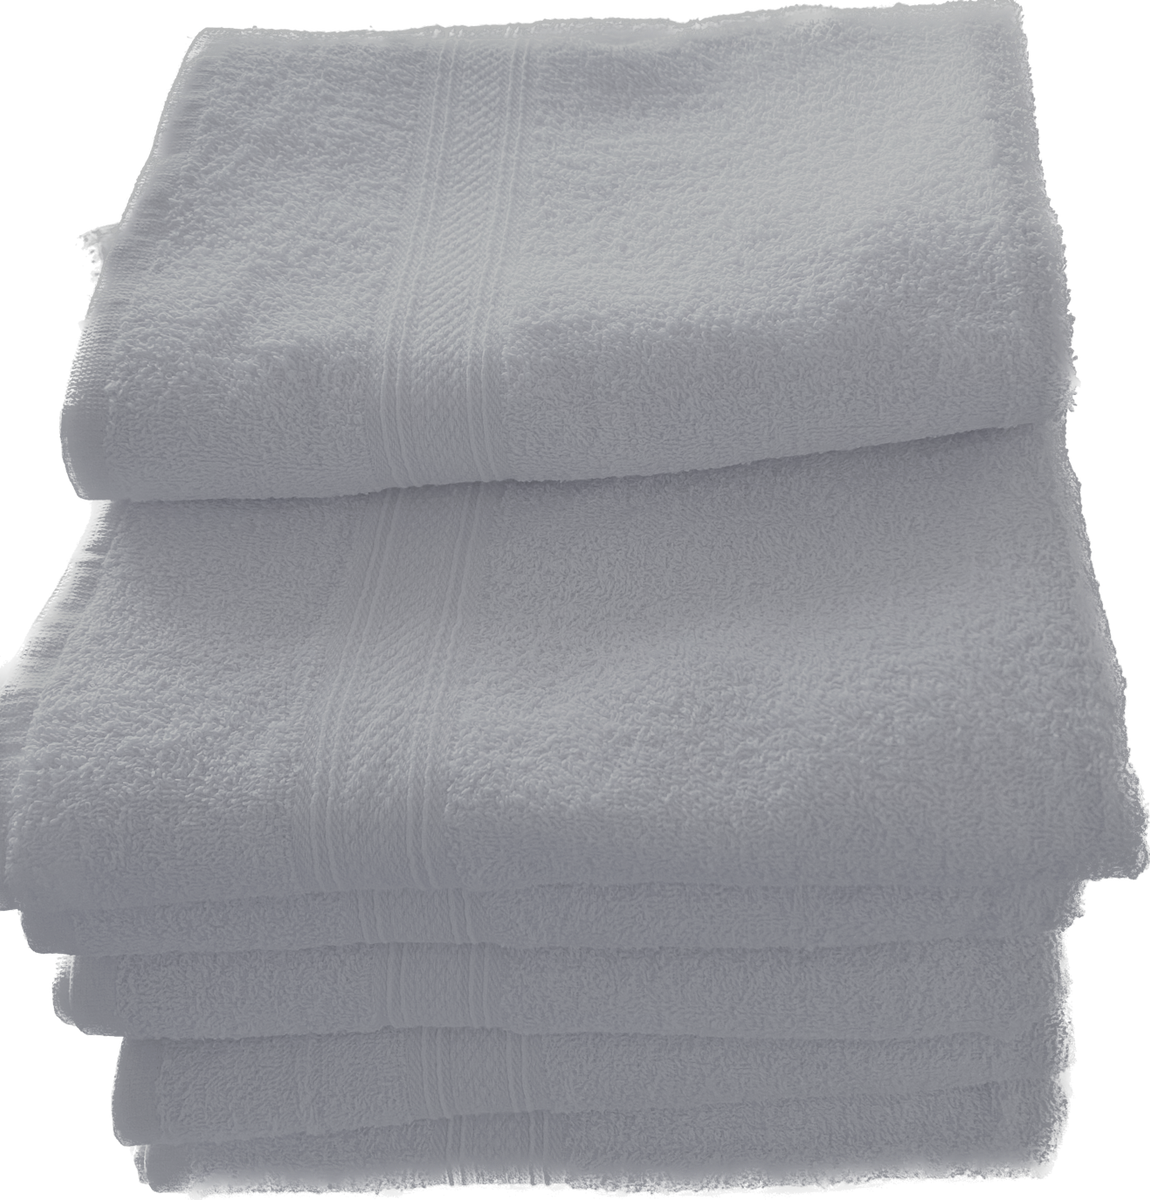 Rapture XXL Large Bath Towels-White 2 Dz per Carton